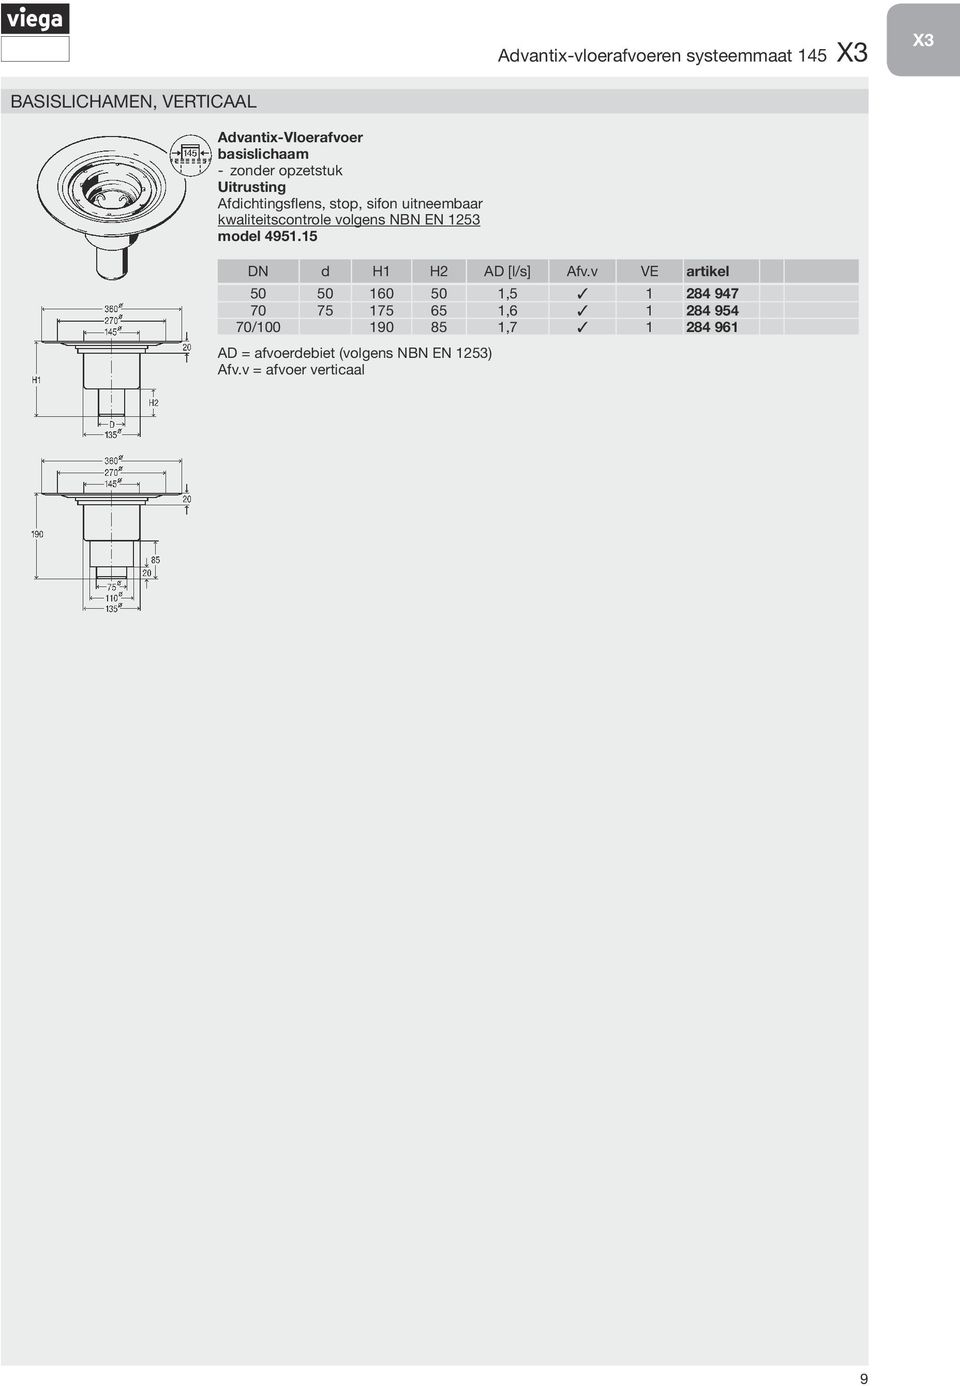 kwaliteitscontrole volgens NBN EN 1253 model 4951.15 DN d H1 H2 AD [l/s] Afv.